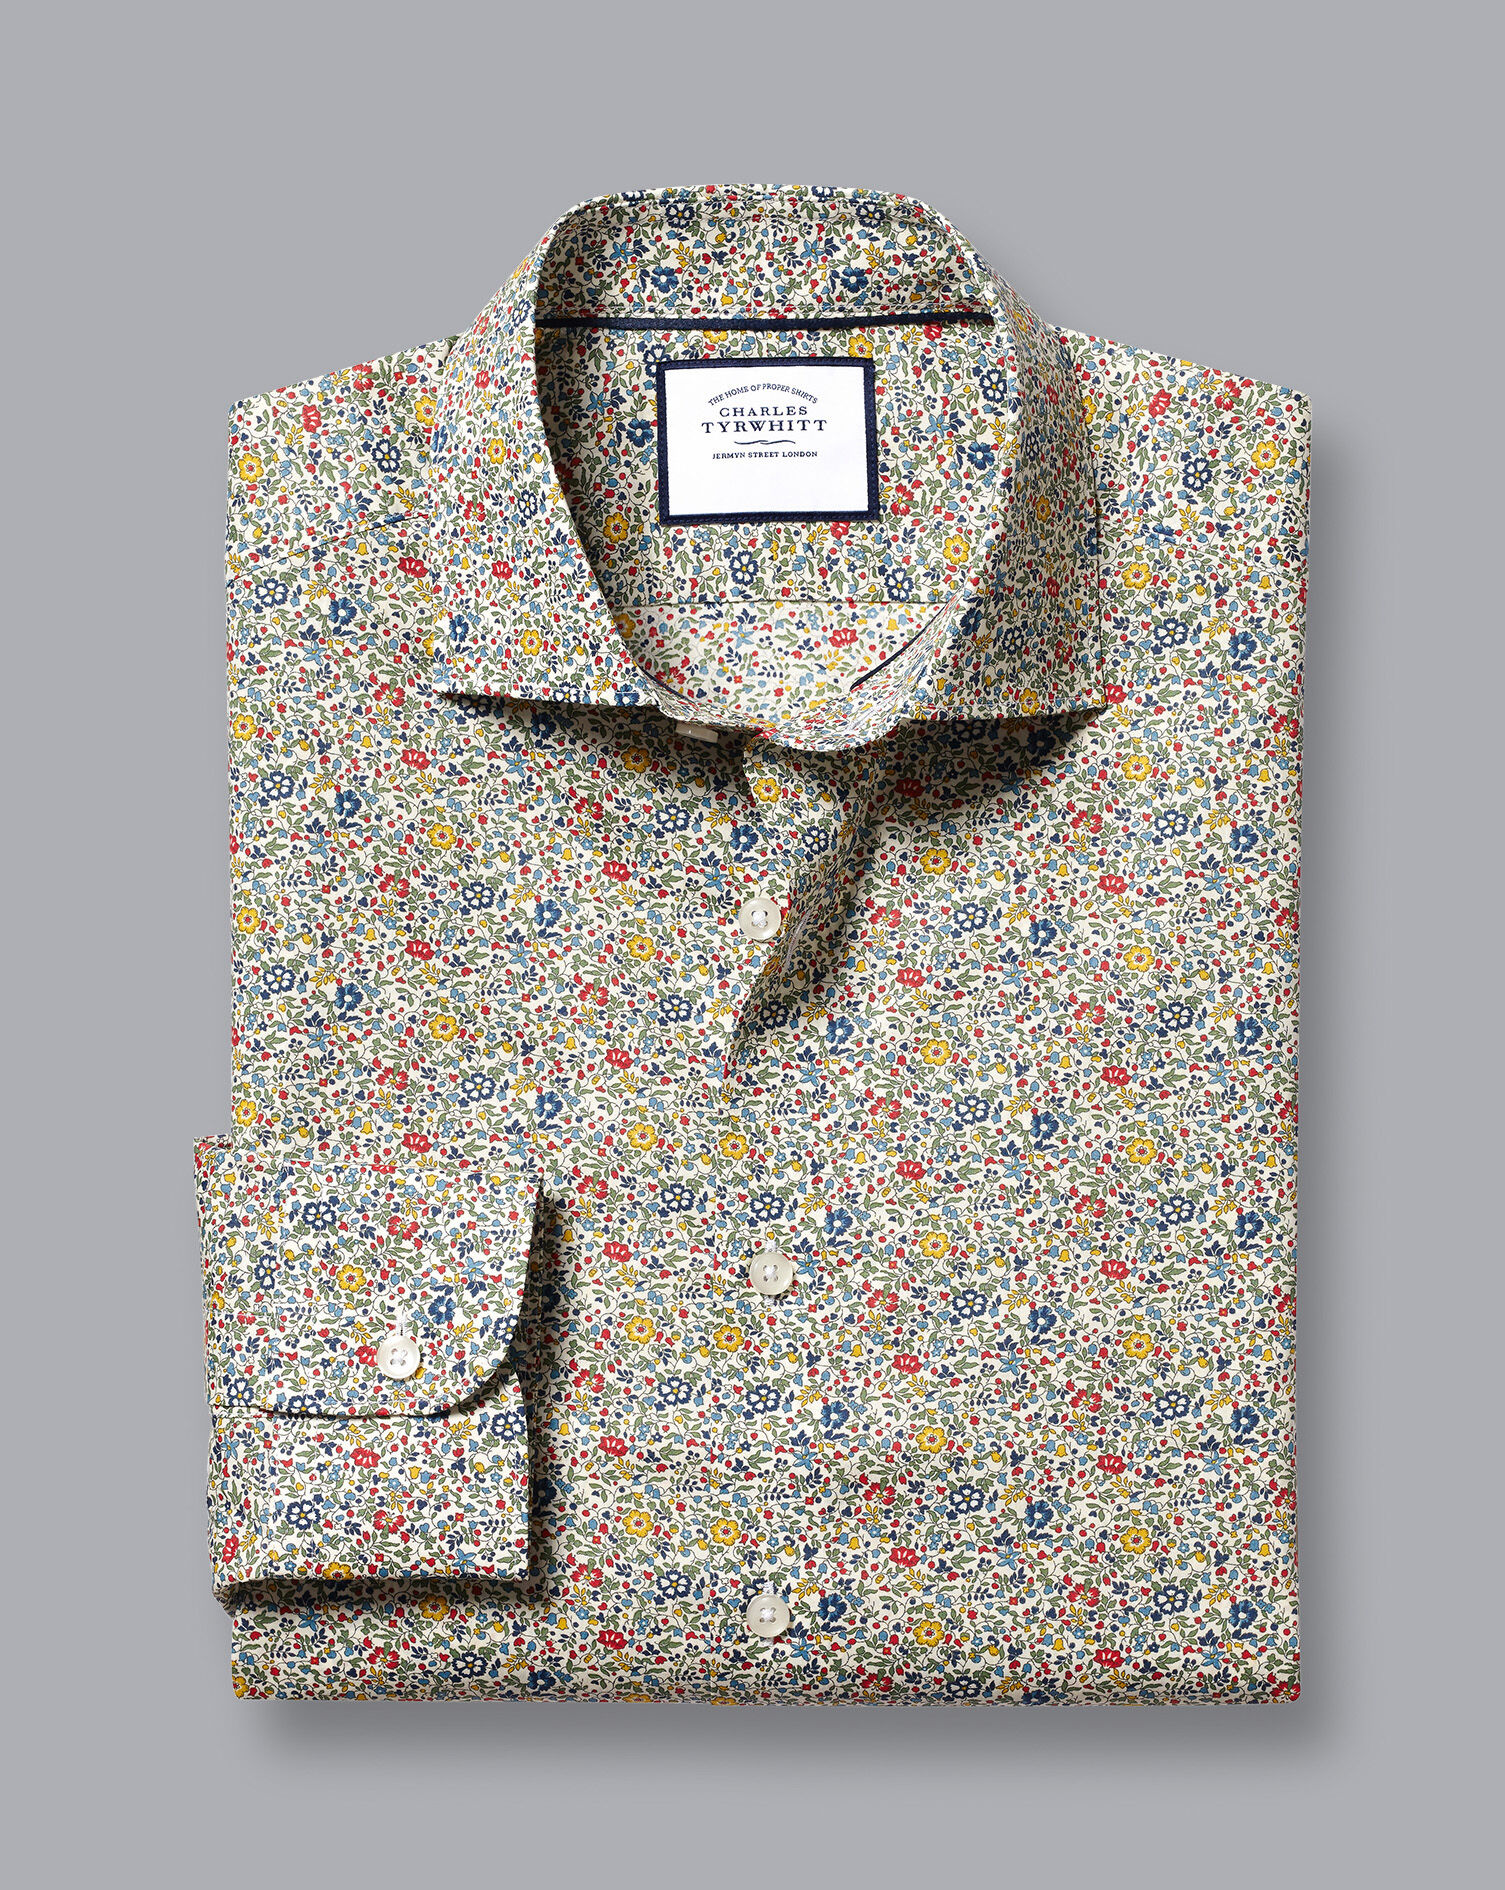 Charles Tyrwhitt Charles Tyrwhitt Mens Shirt Long Sleeve S Multi 100% Cotton 